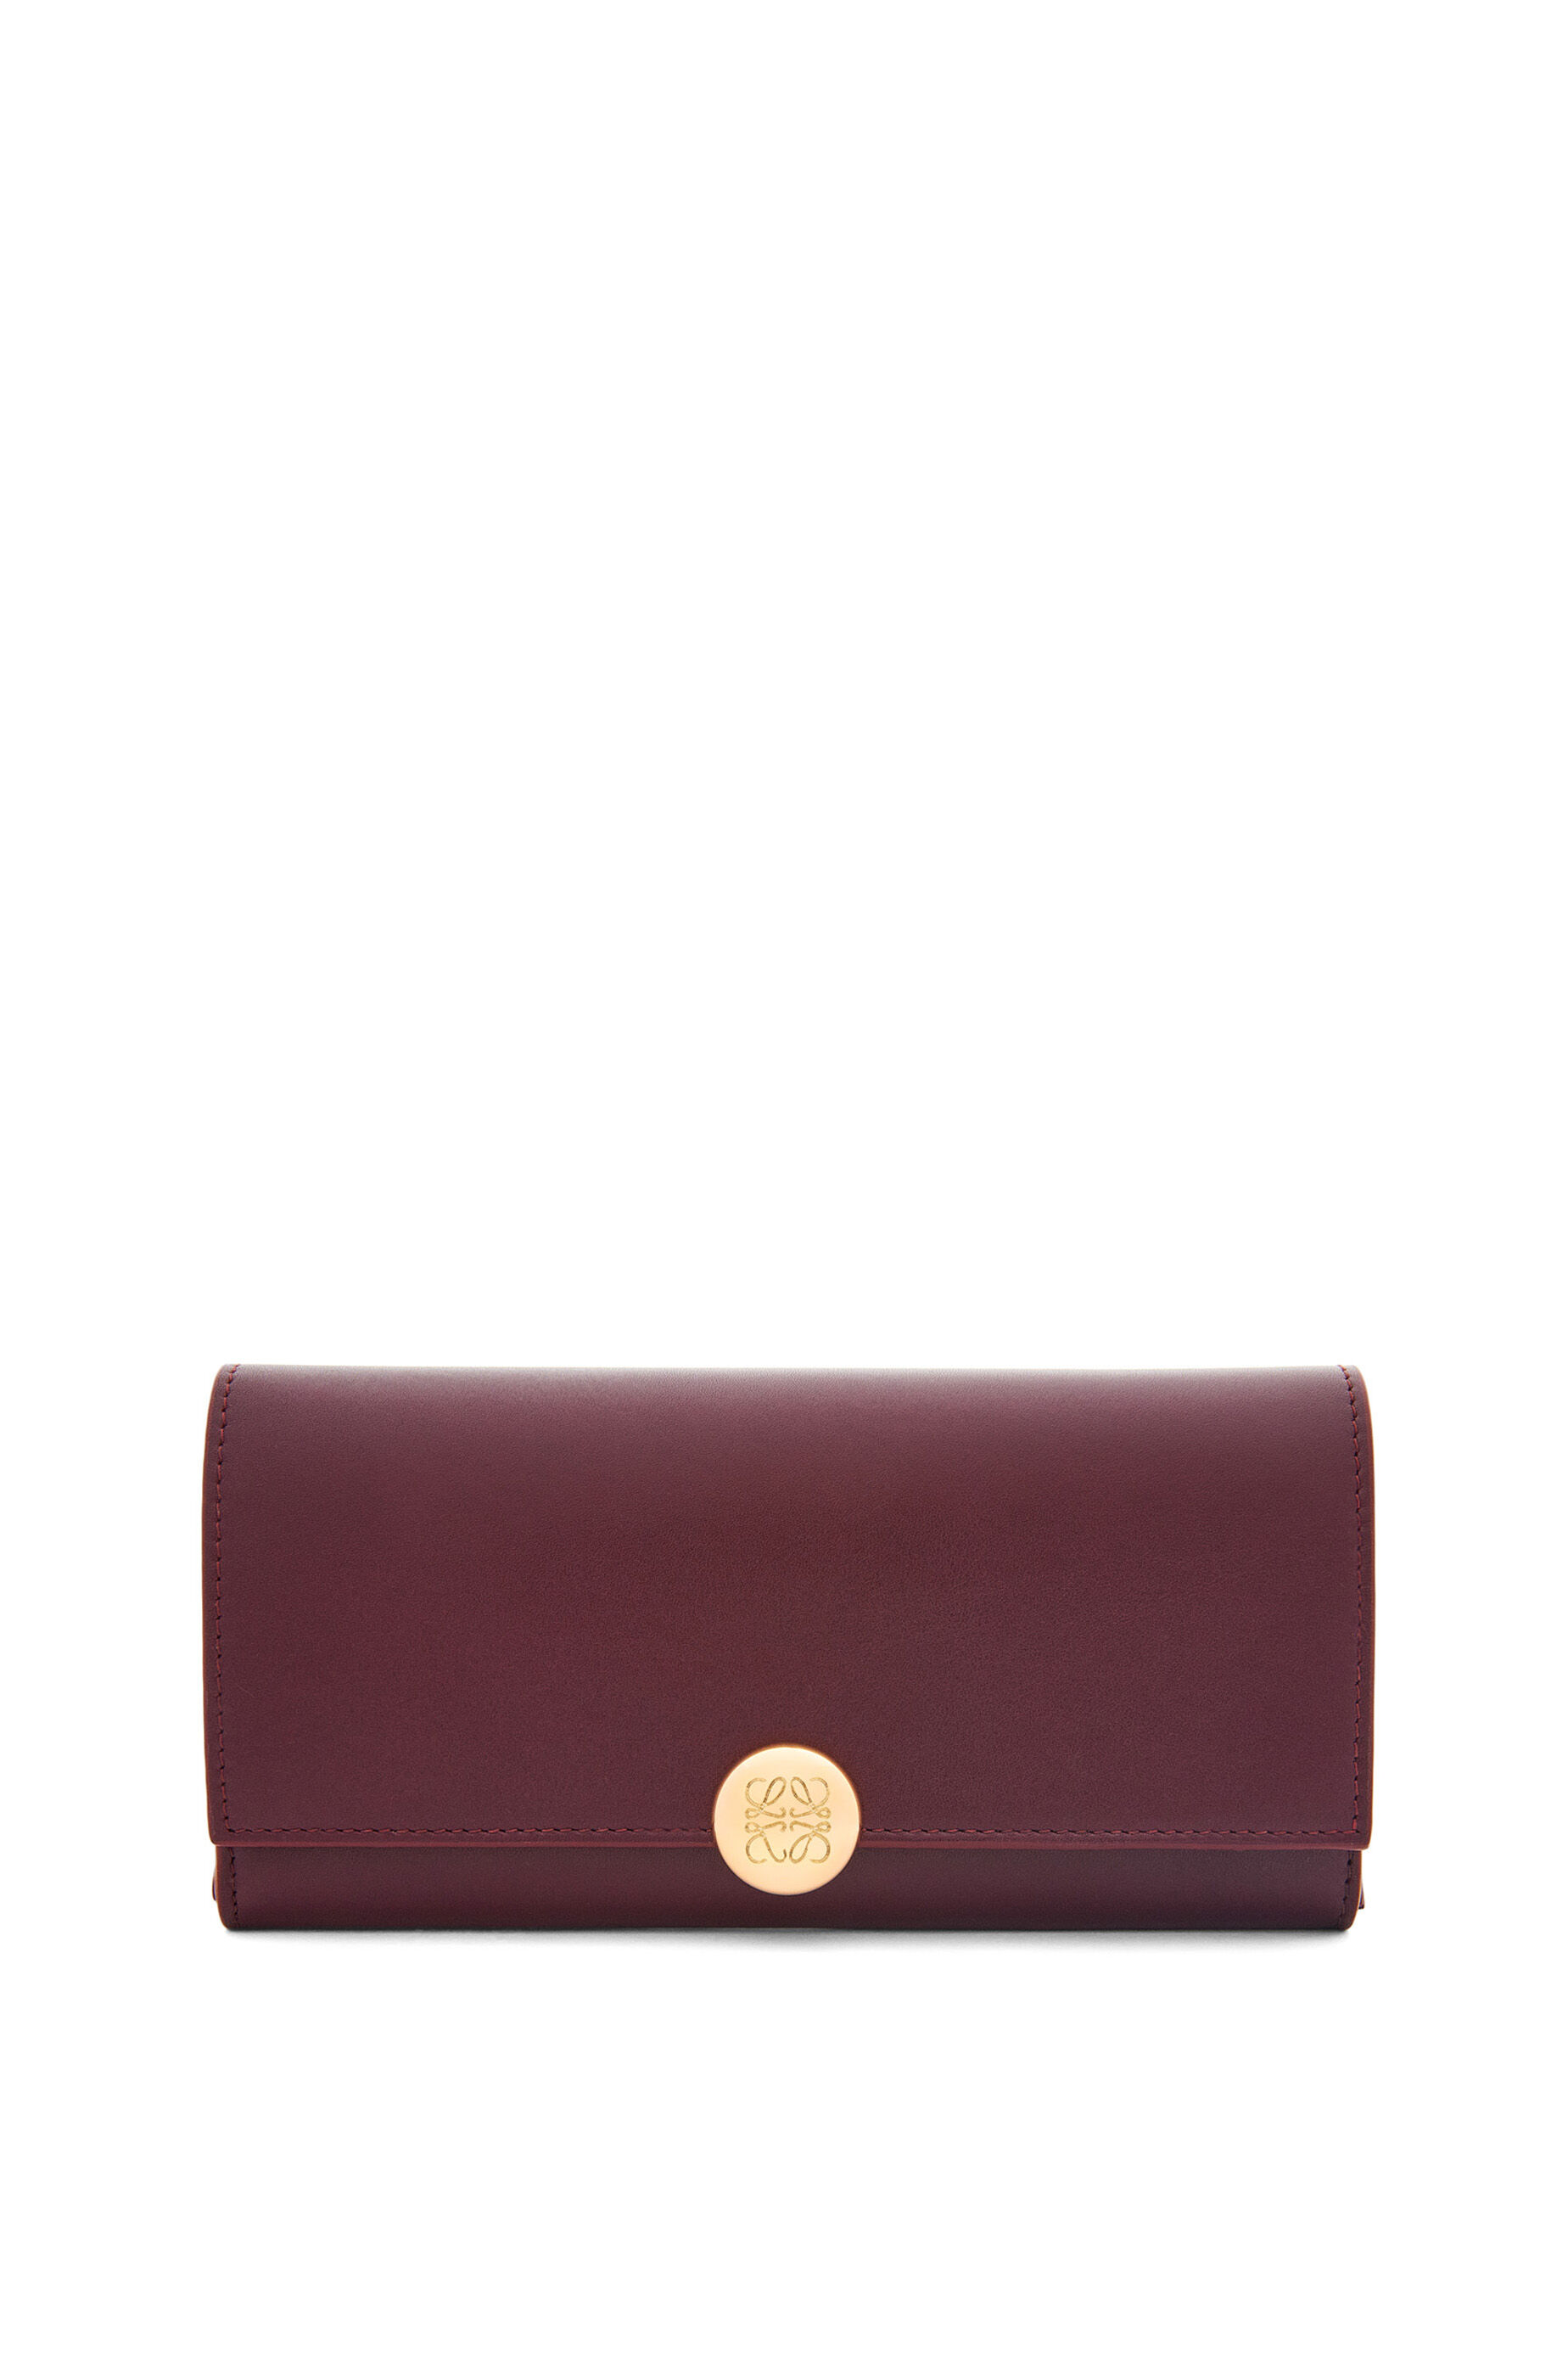 40代女性に人気のレディース長財布は、ロエベのぺブル コンティネンタル ウォレット